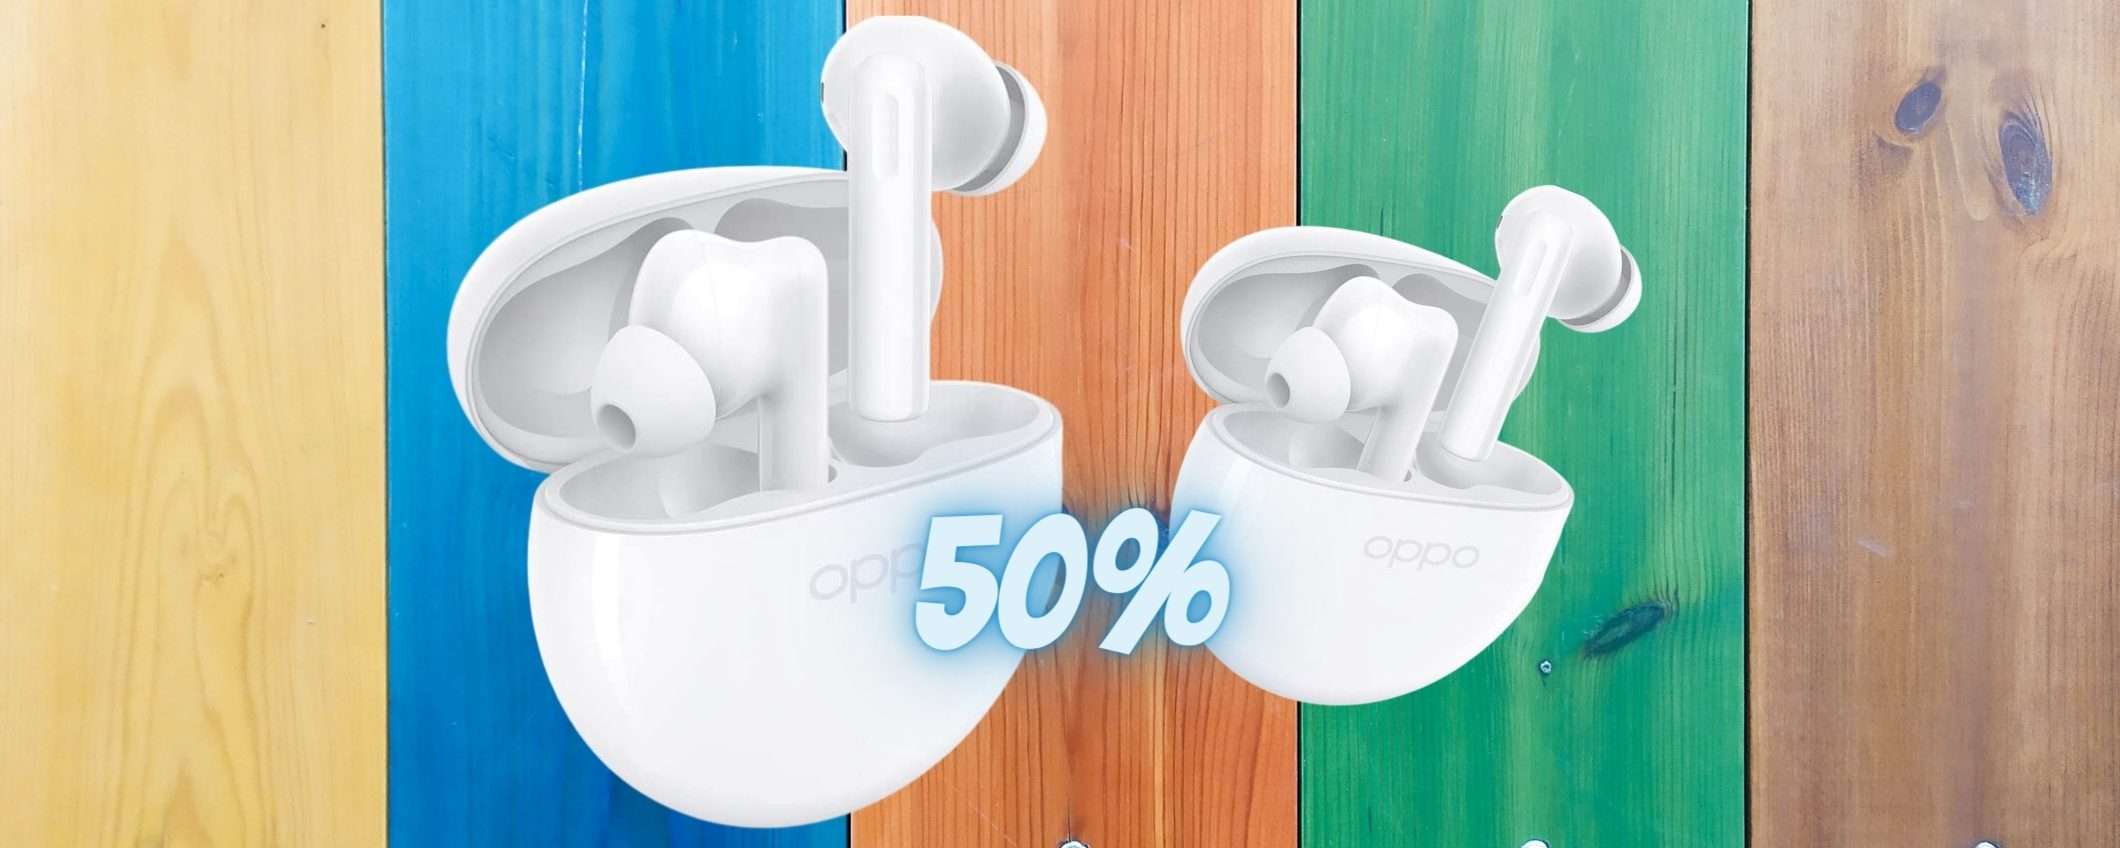 OPPO Enco Buds2, wearable al 50% dalle prestazioni SHOCK